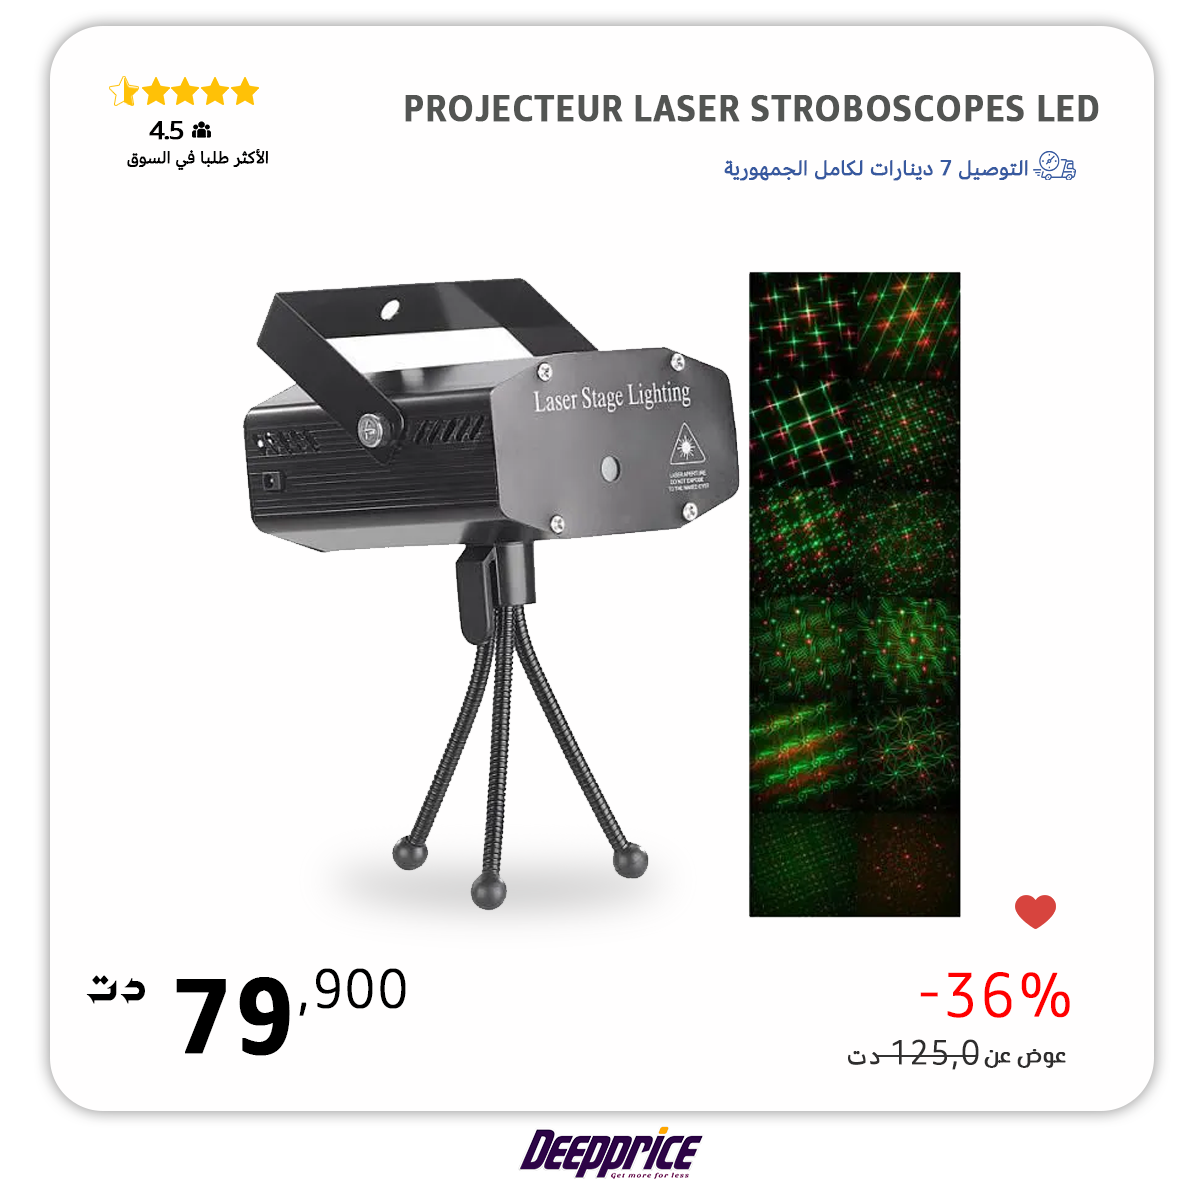 Projecteur Laser stroboscopes LED